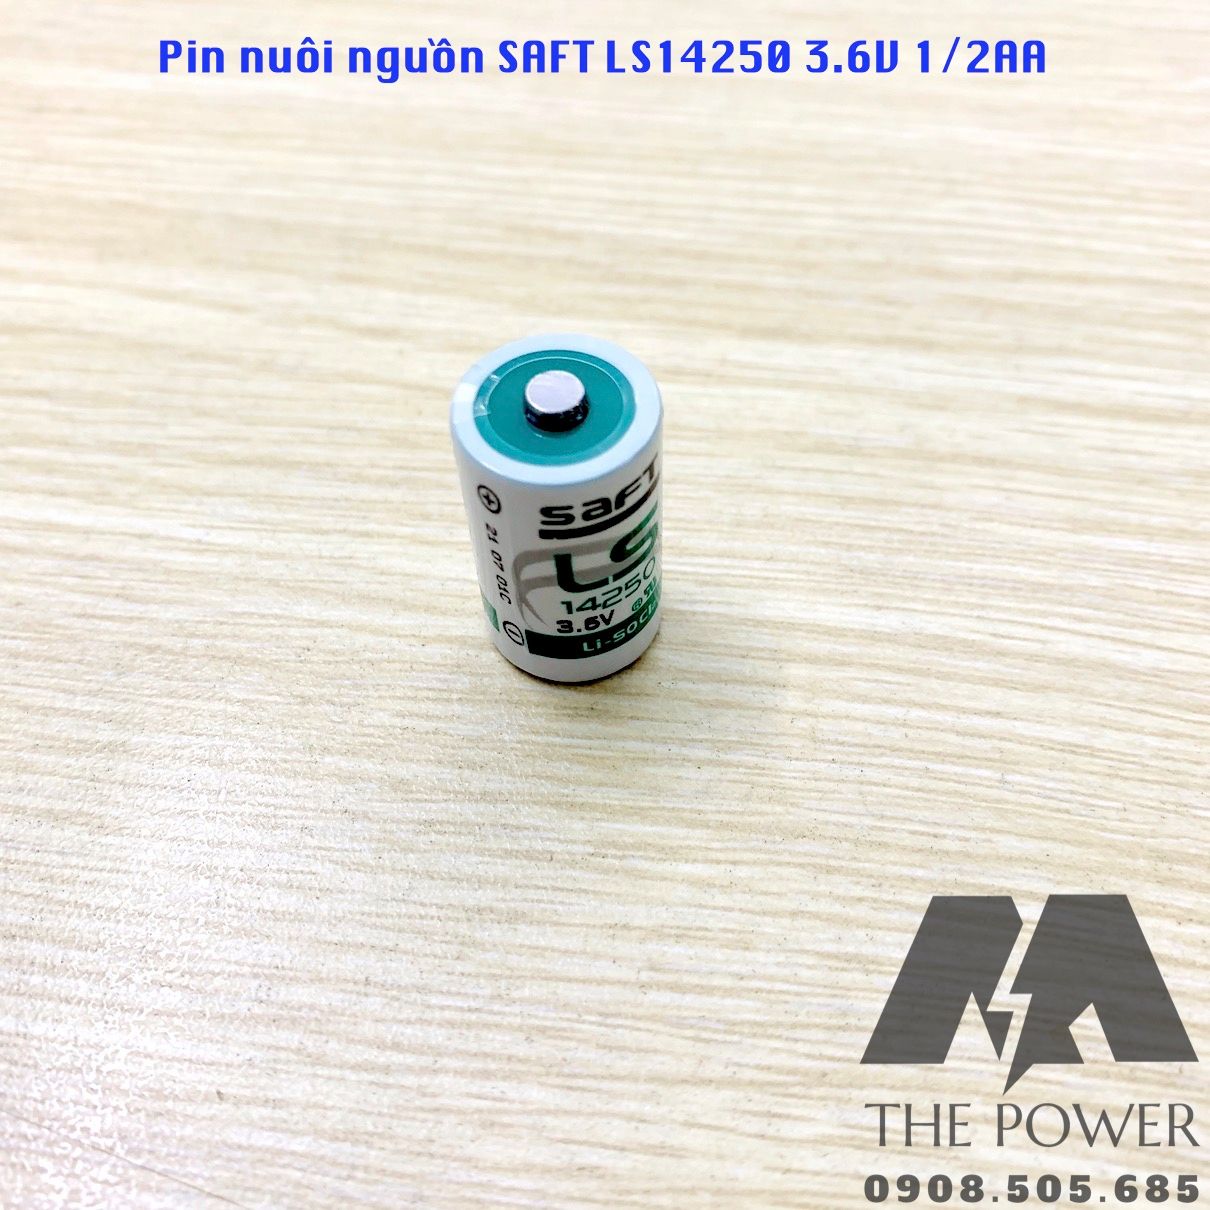 Pin nuôi nguồn Saft LS14250 3.6V 1/2AA